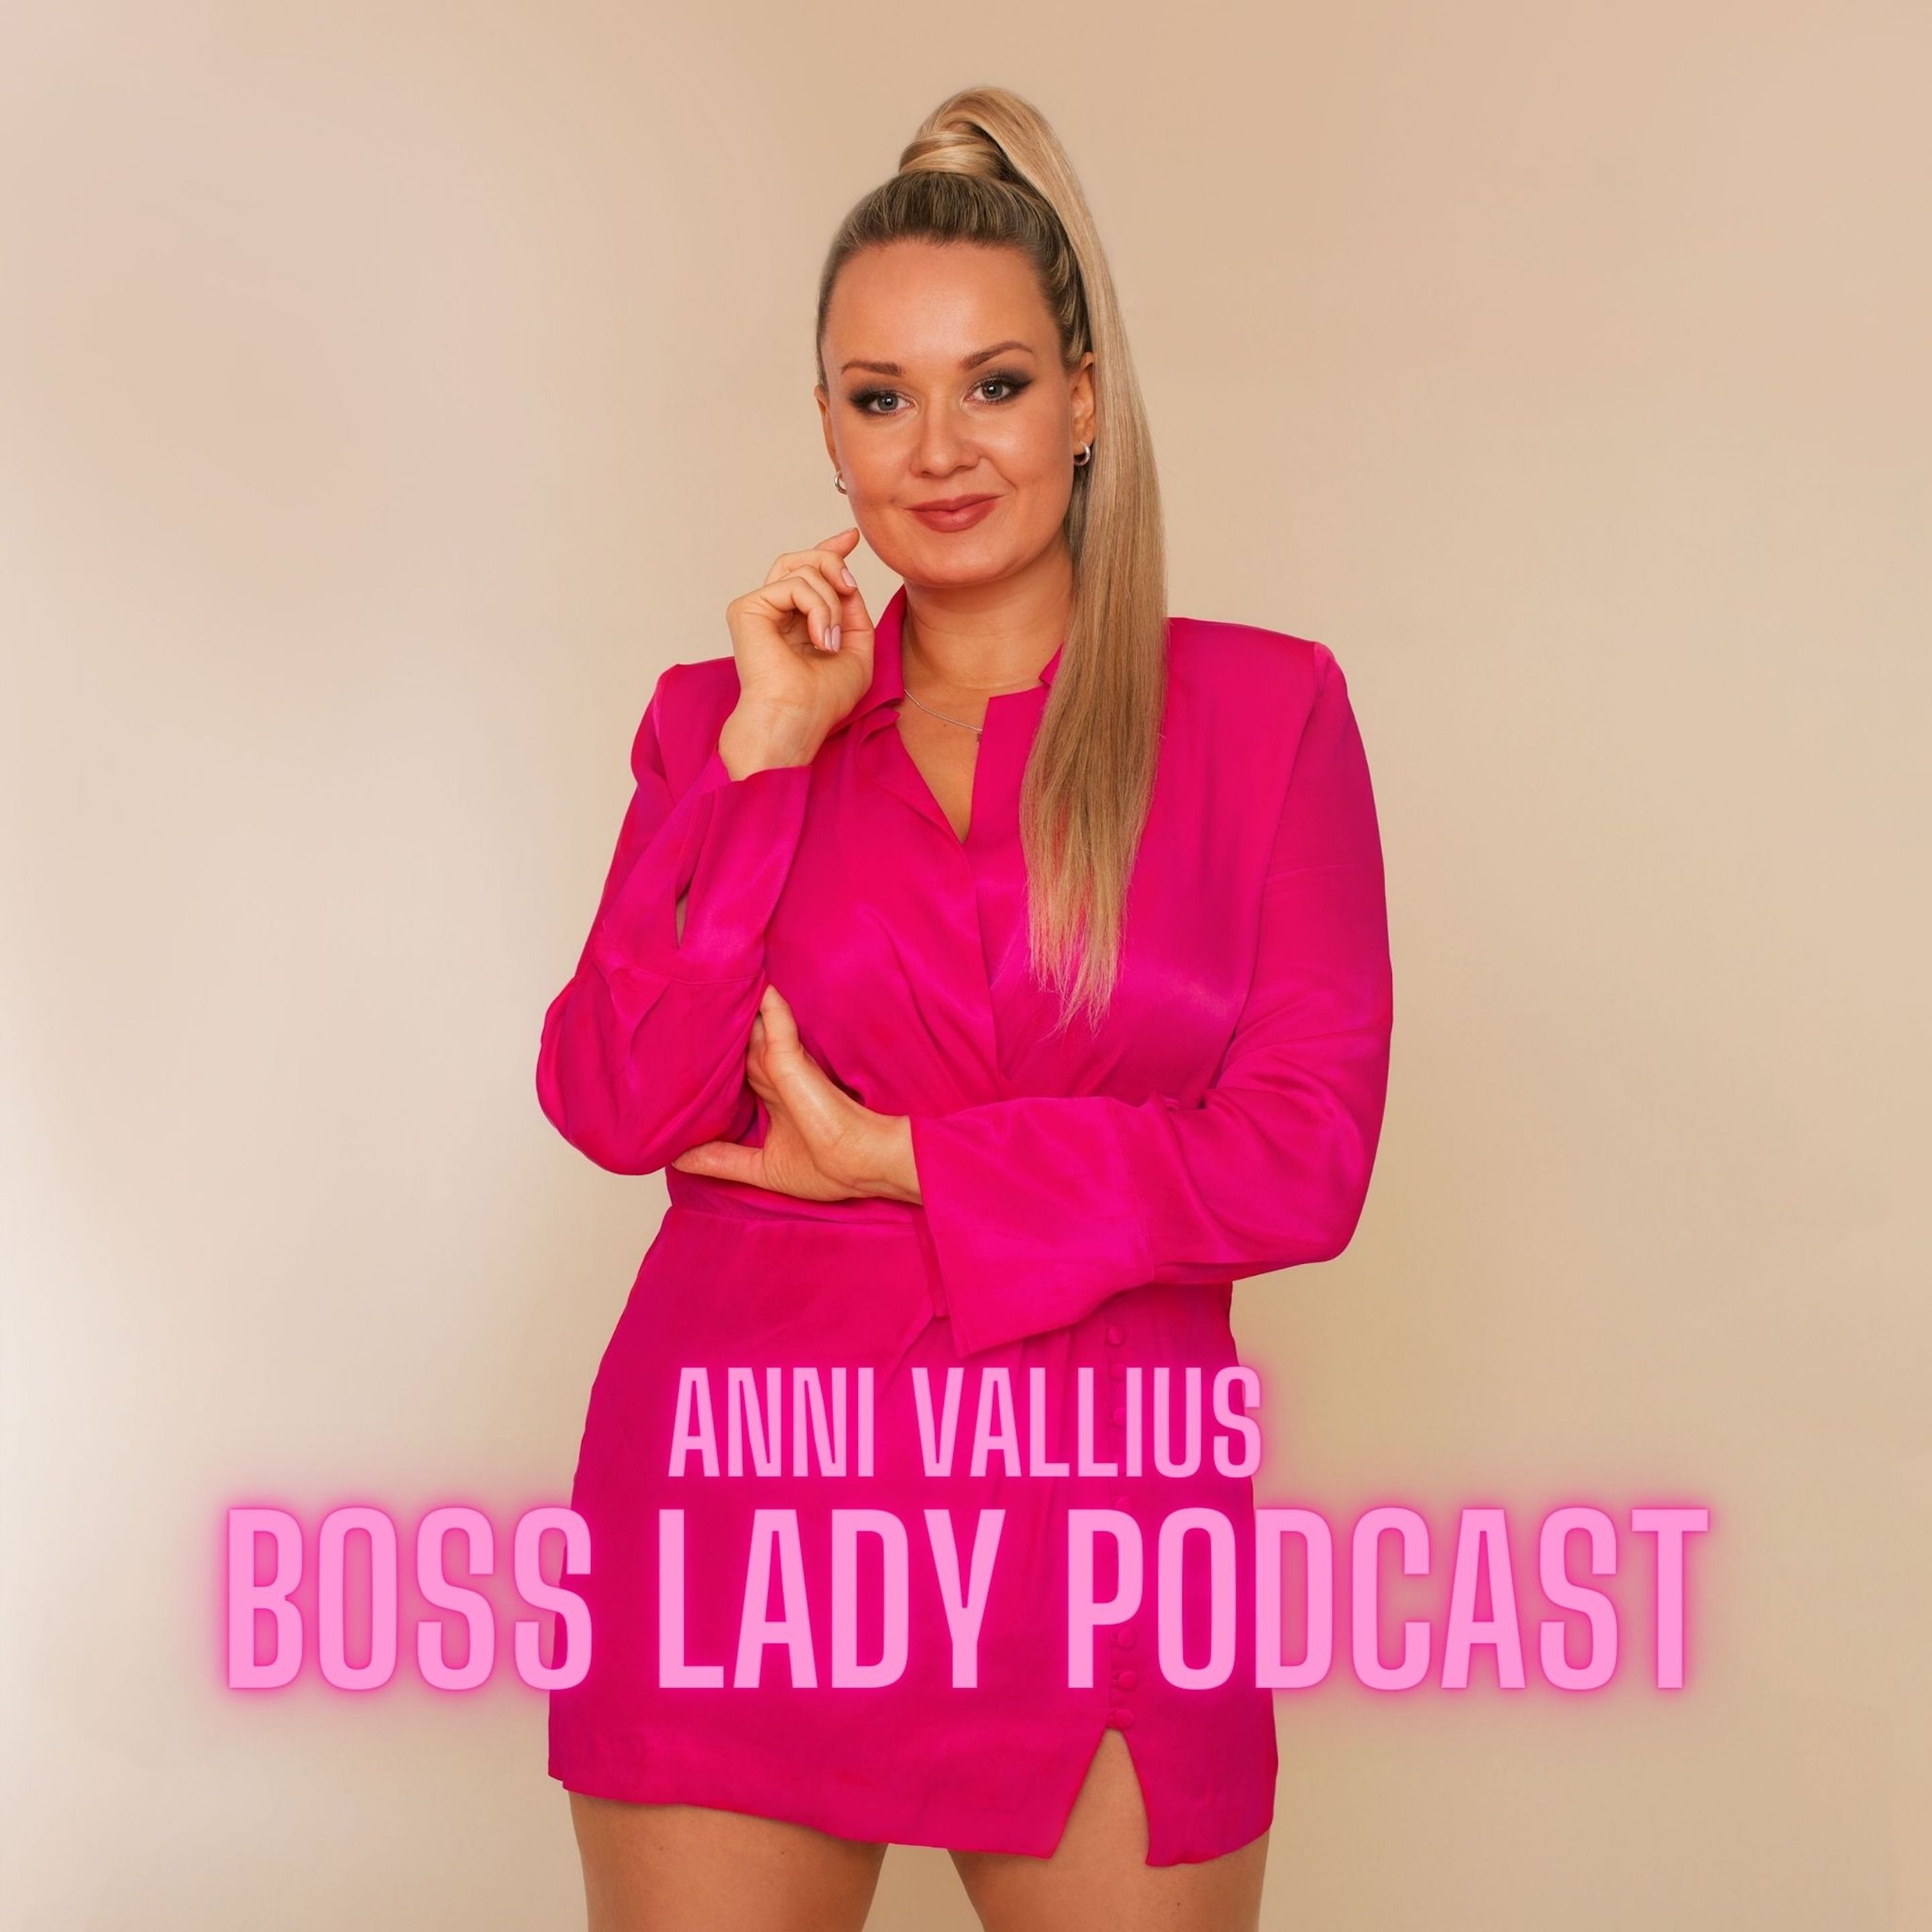 Ura, äitiys ja Boss Lady Podcastin synty ft. Anni Vallius